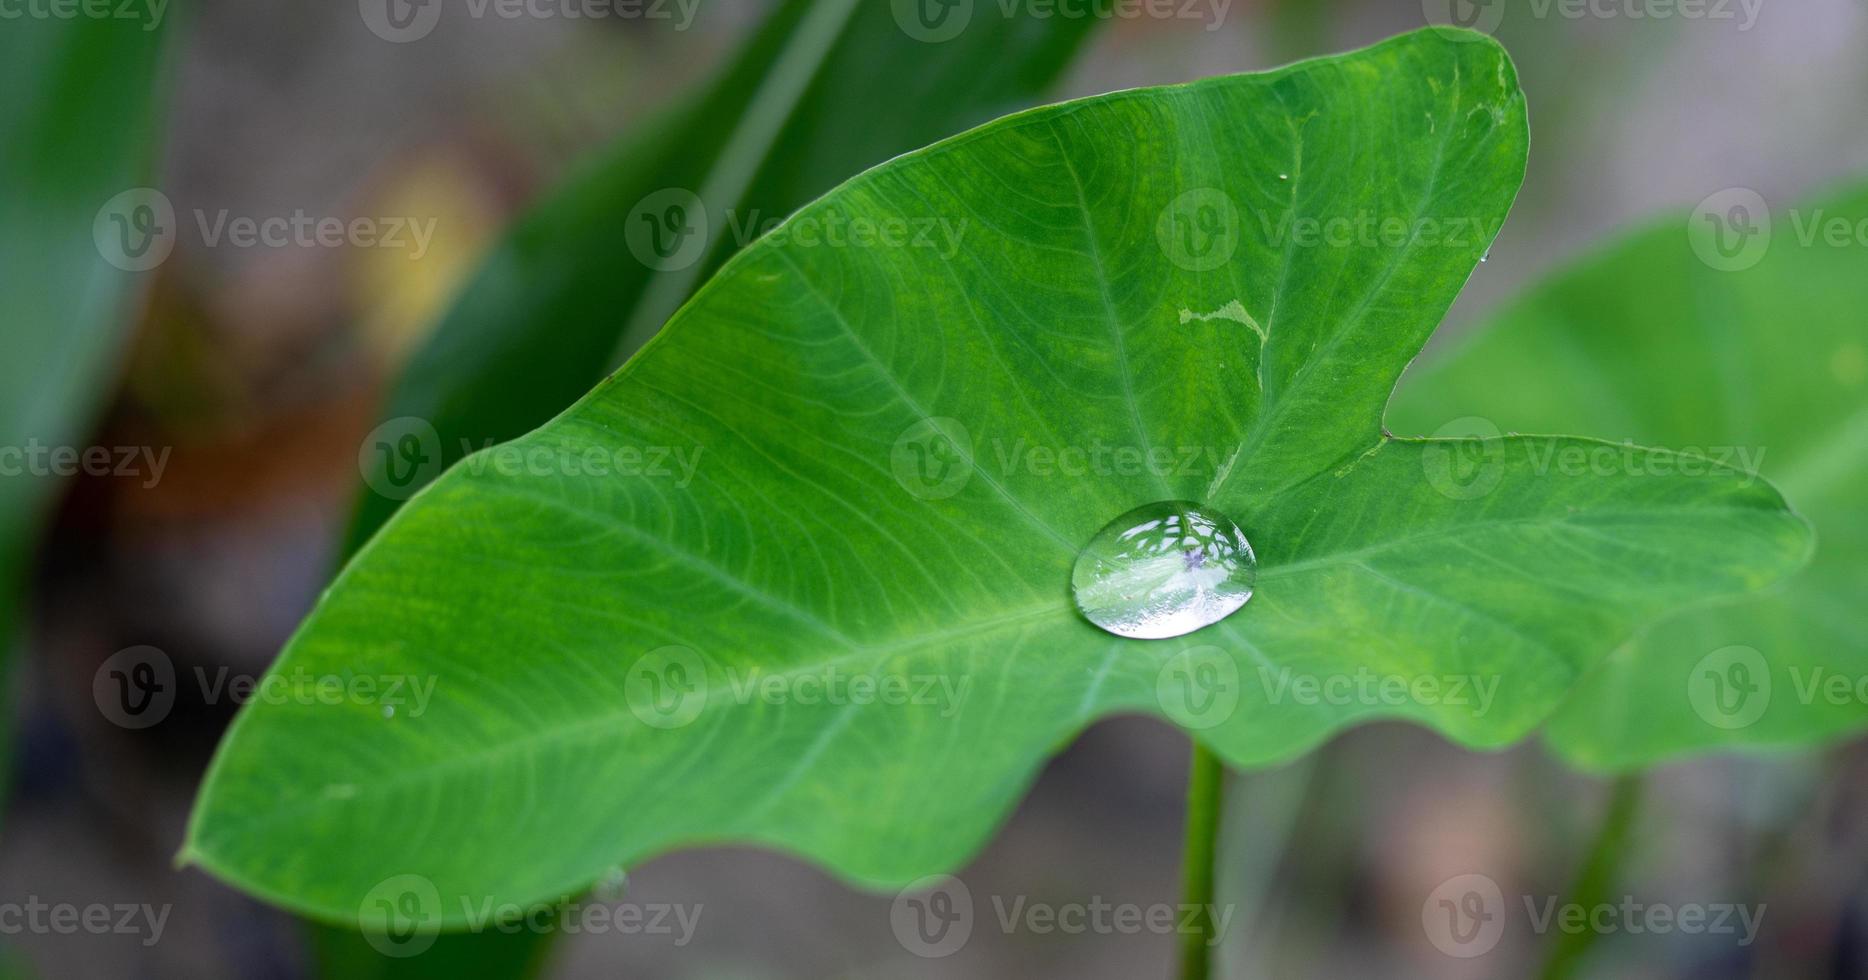 nice detail of water drops on leaf - macro detail photo